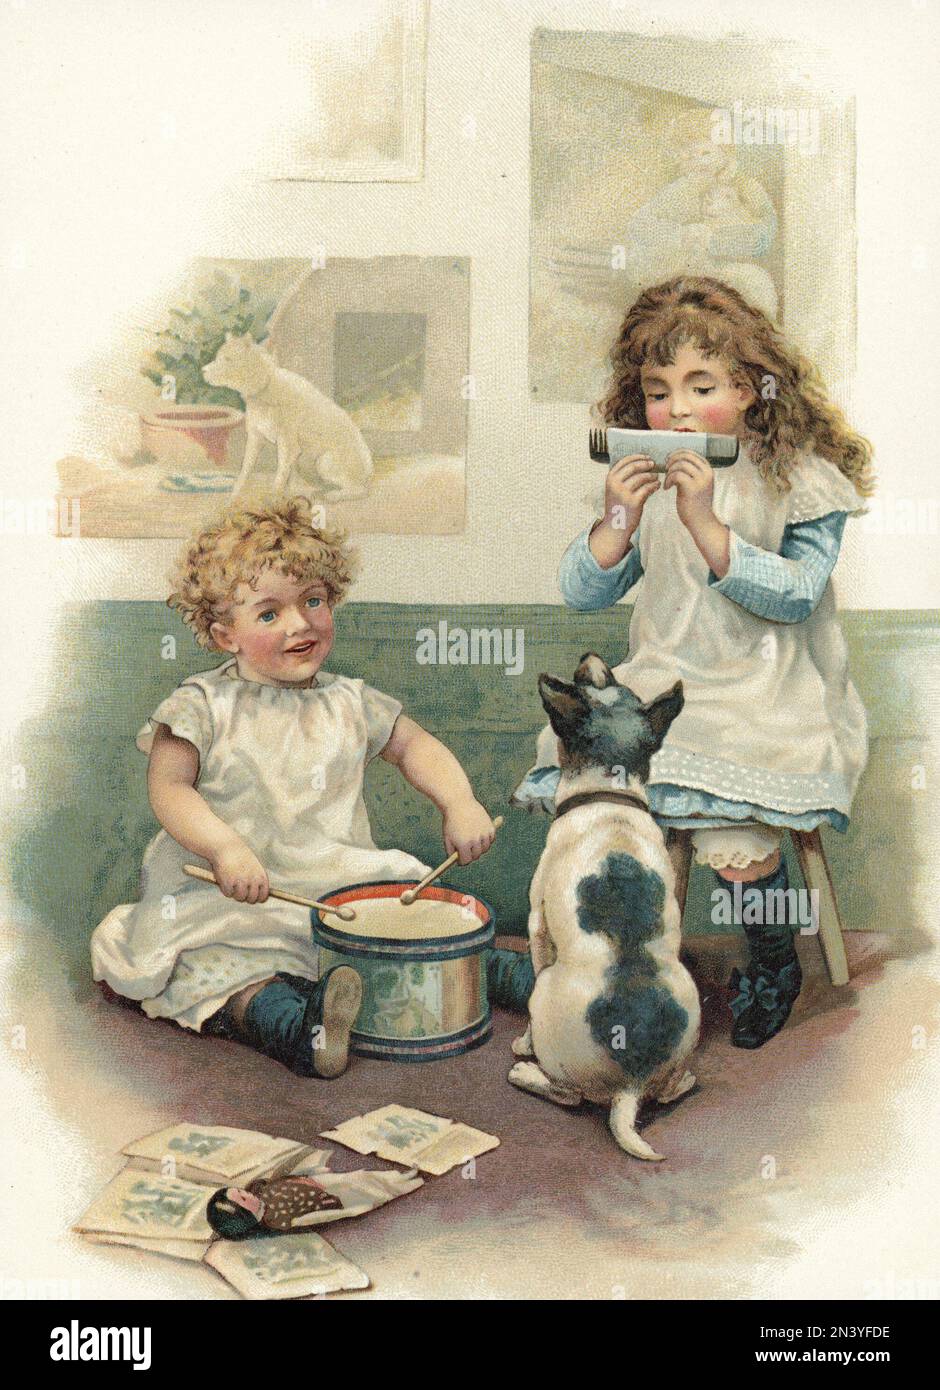 Zwei Kinder spielten für ihren Hund auf dieser Illustration von der Jahrhundertwende 1800-1900. Das Mädchen auf der rechten Seite spielt einen Kamm, indem sie ein Stück Papier hat, auf das sie aufbläst. Stockfoto